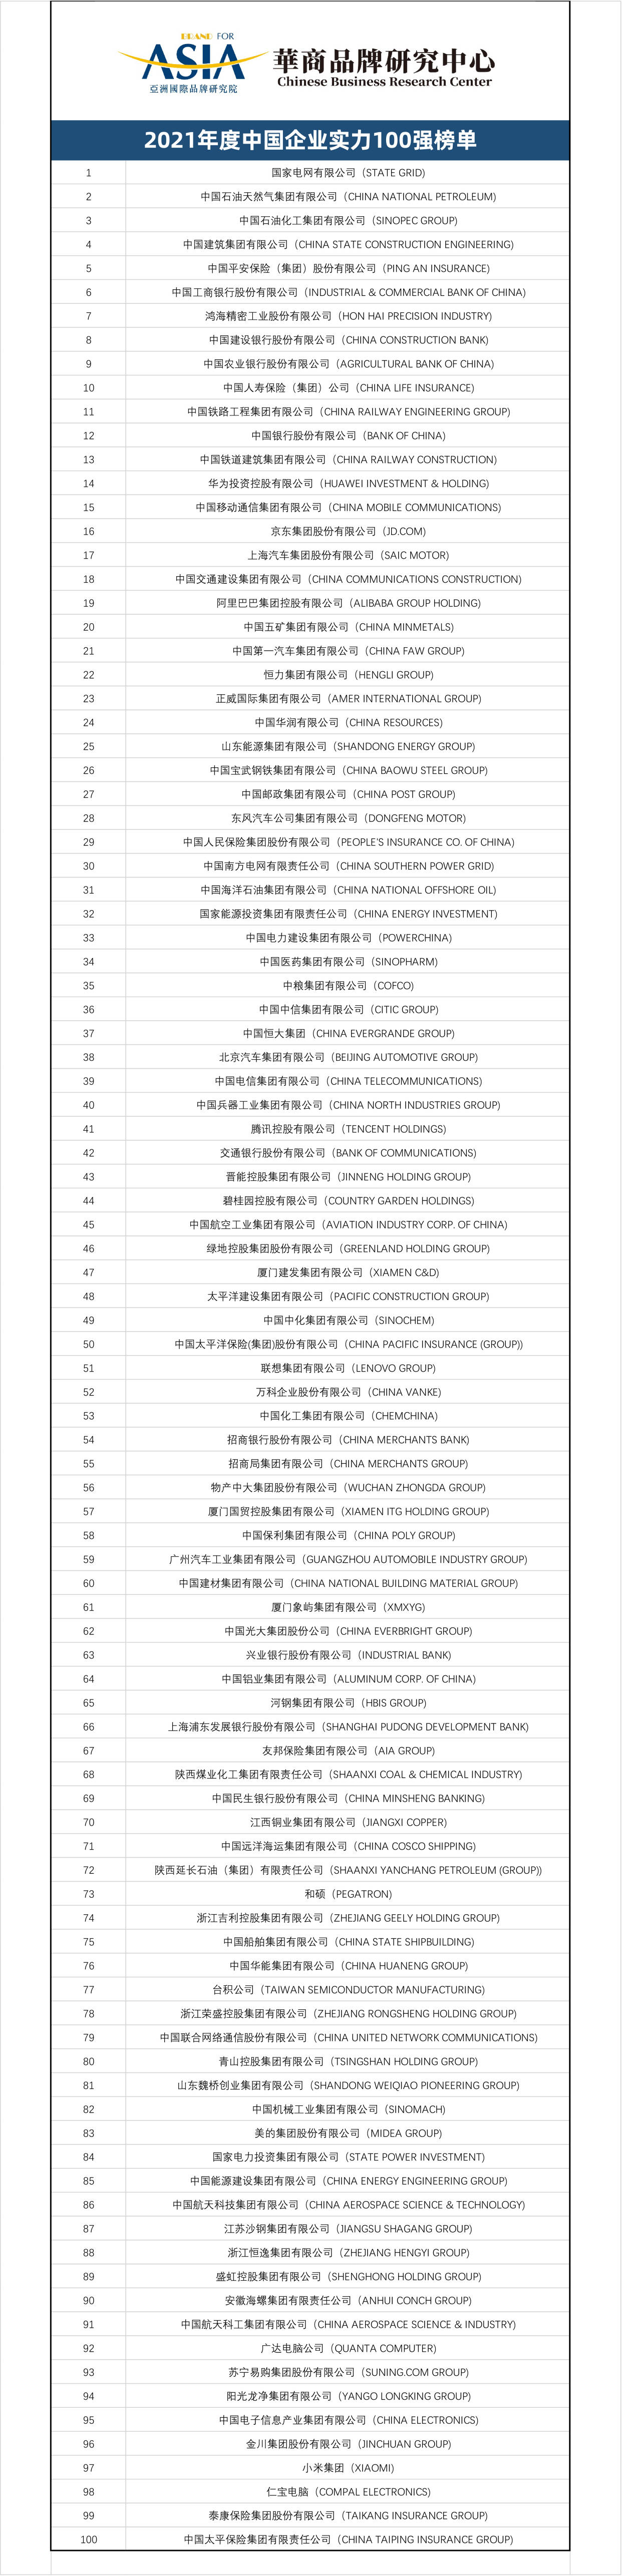 亚洲国际品牌研究院华商品牌研究中心发布2021中国企业100强榜单